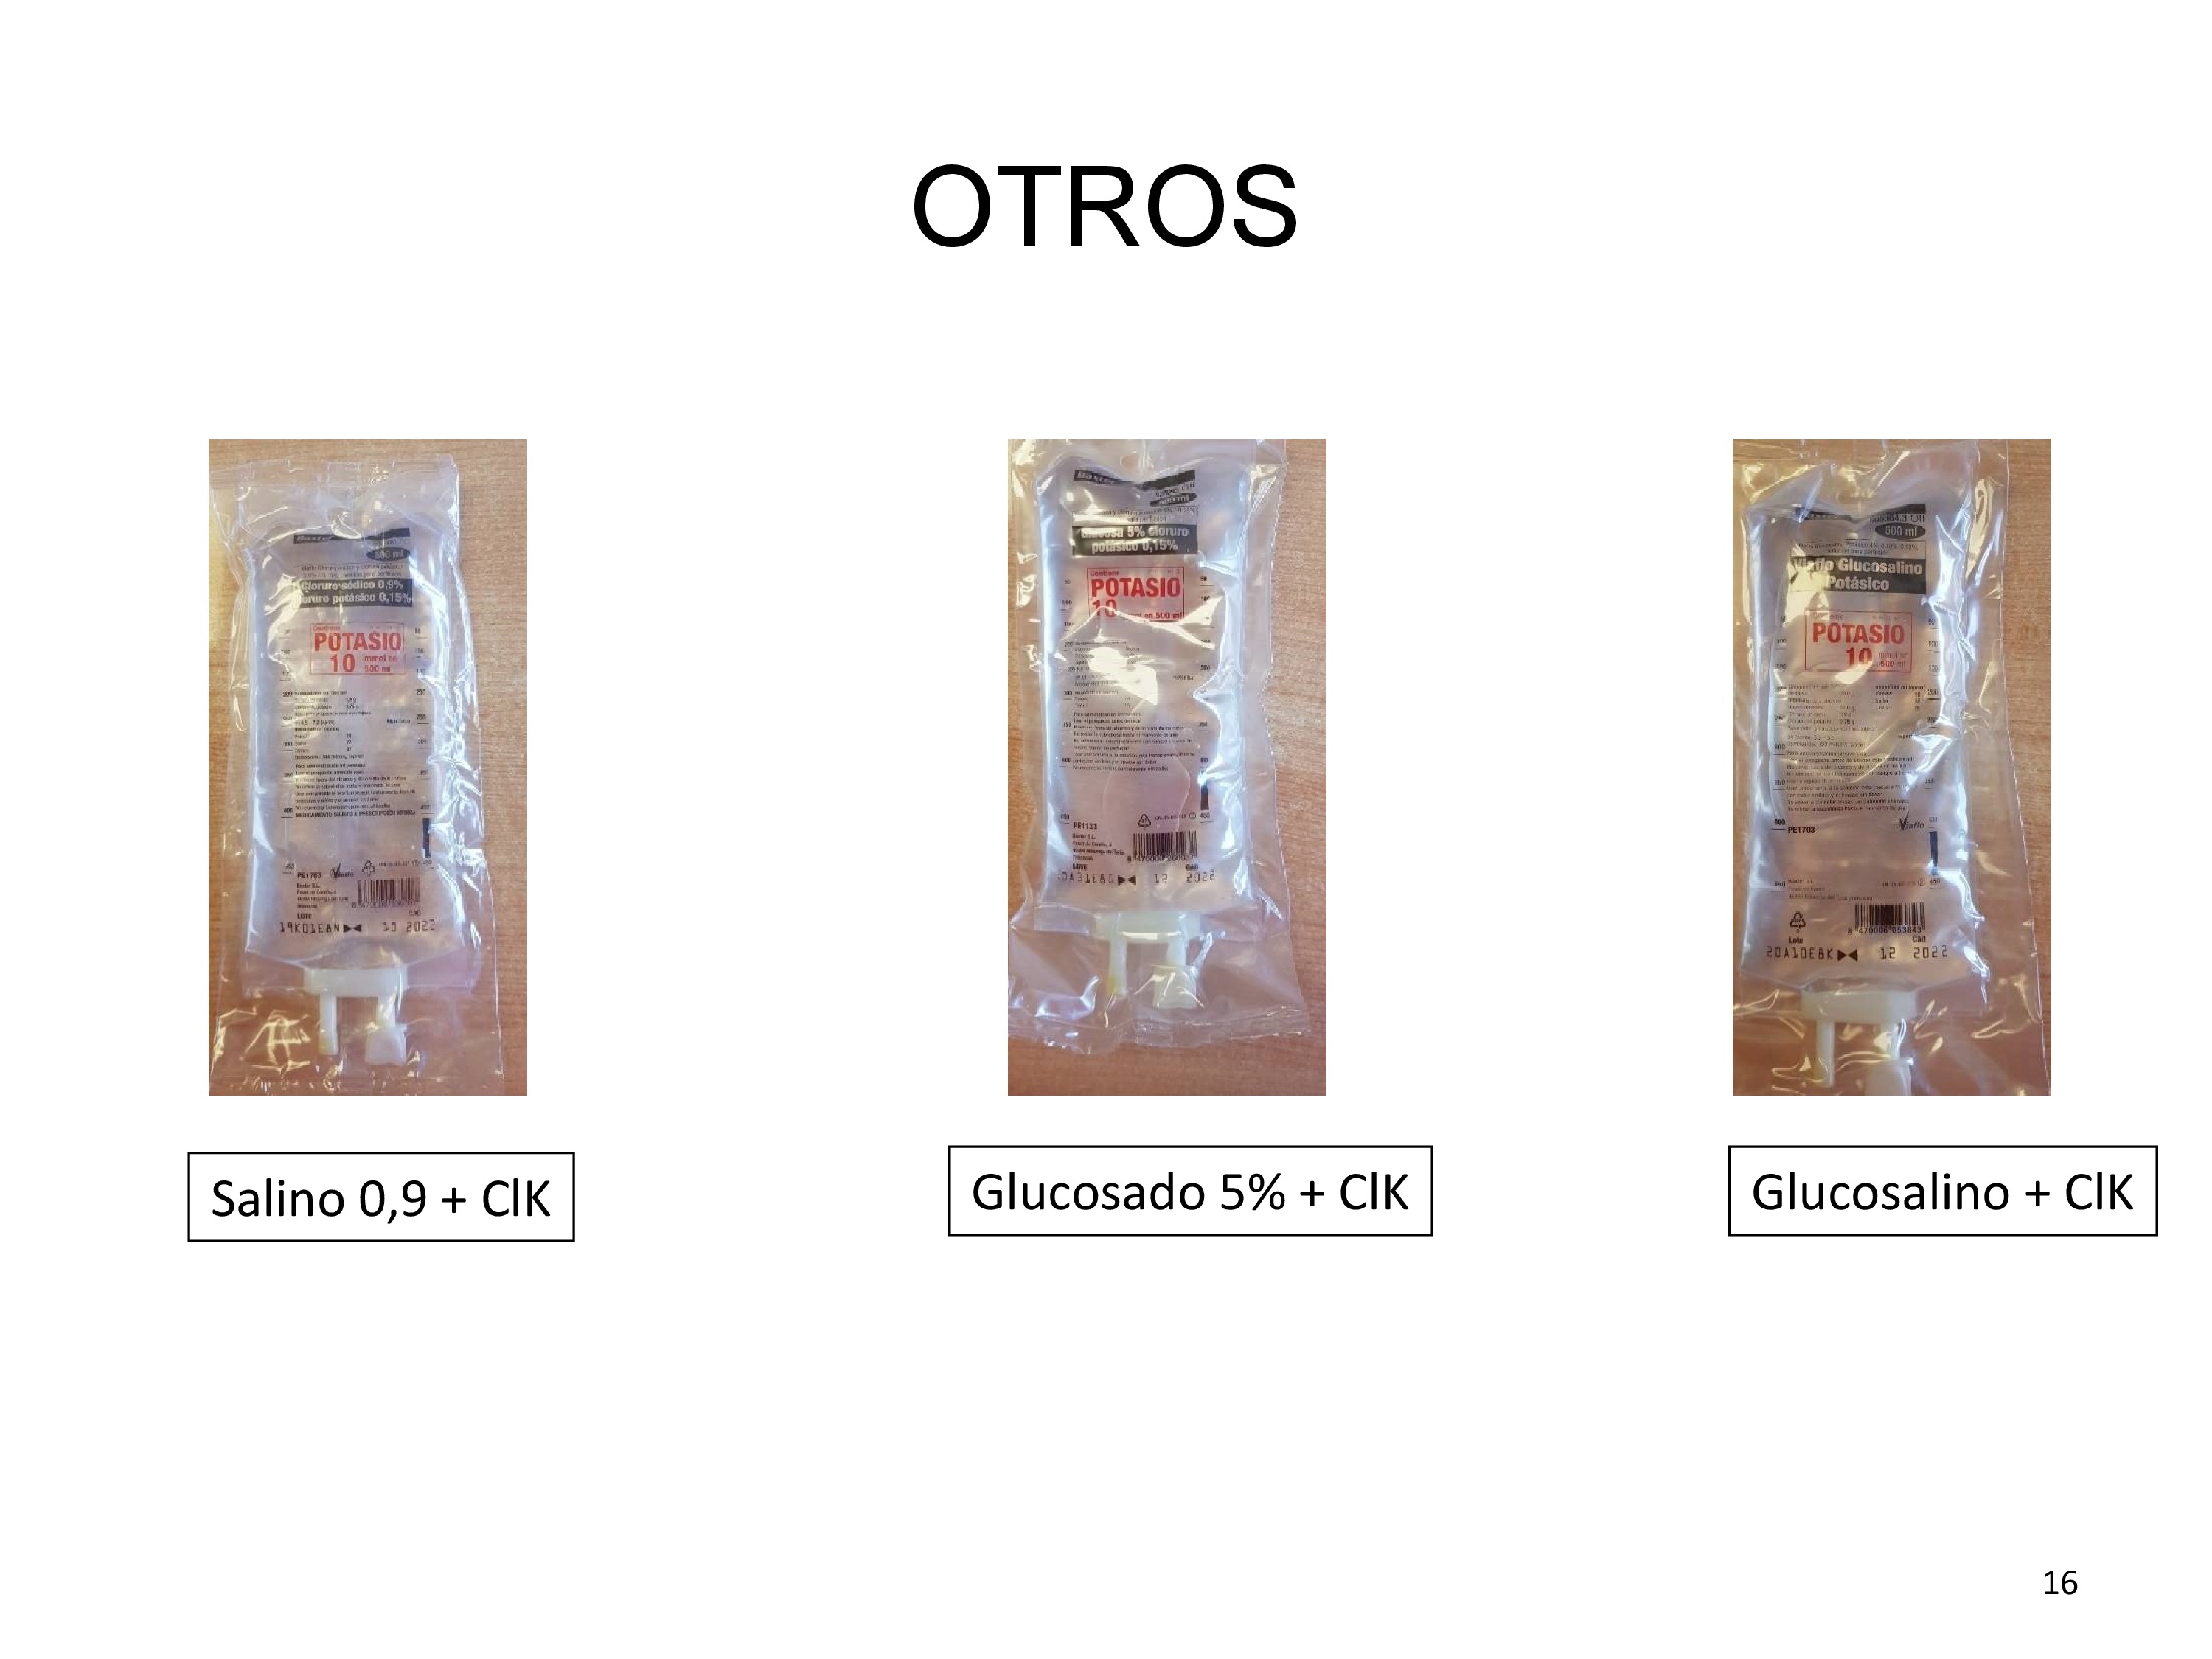 Se exponen ejemplos de otros sueros utilizados en clínica que llevan añadidos 10 mEq de cloruro potásico.